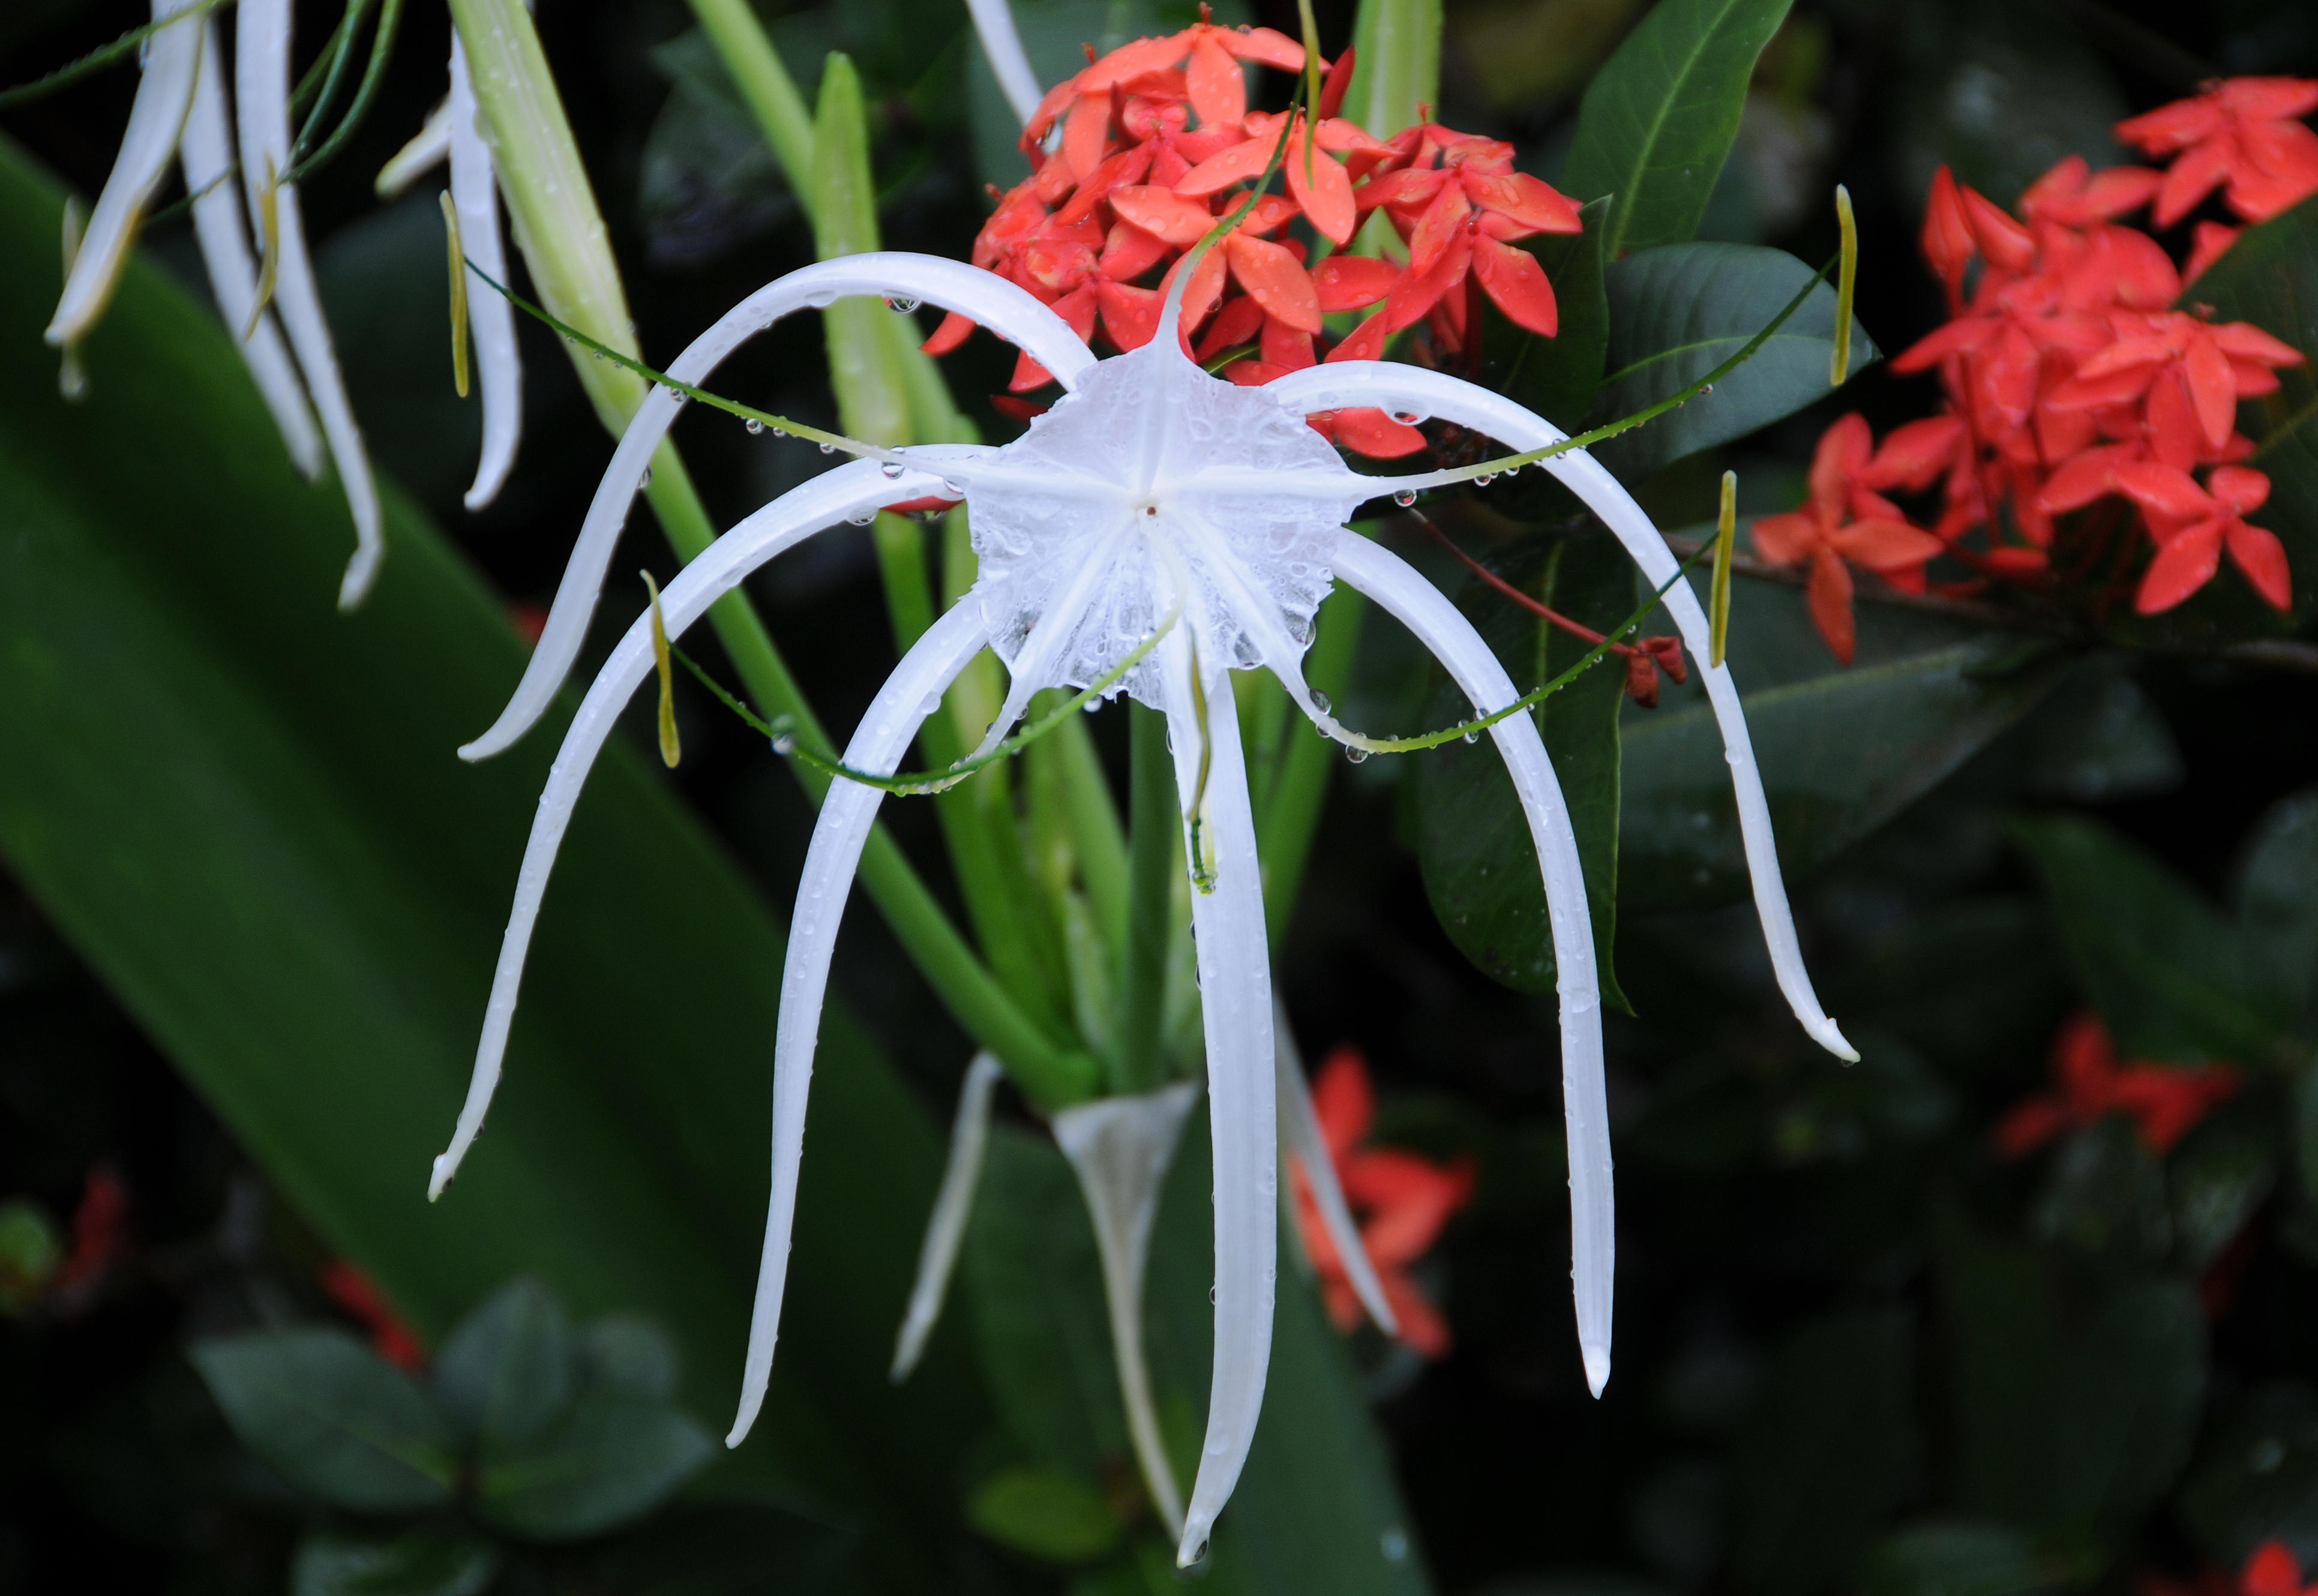 Spider lily & Unknown Orange Flowers 